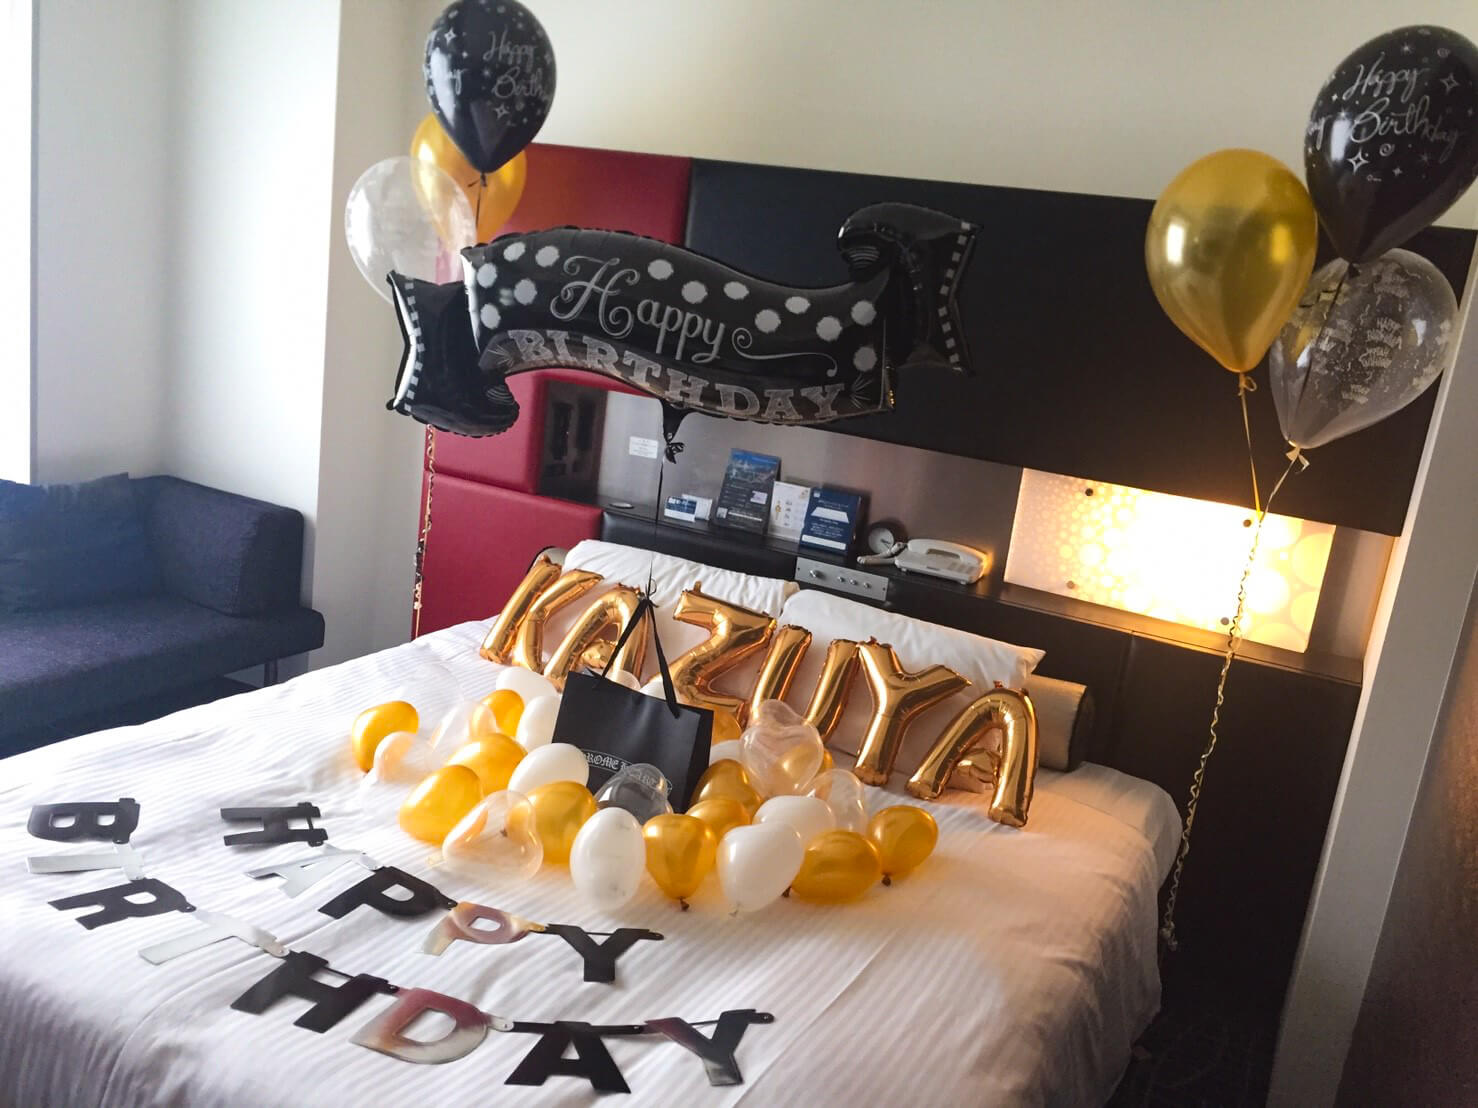 バルーン出張装飾 ホテルサプライズ 誕生日やプロポーズはアニプラバルーン